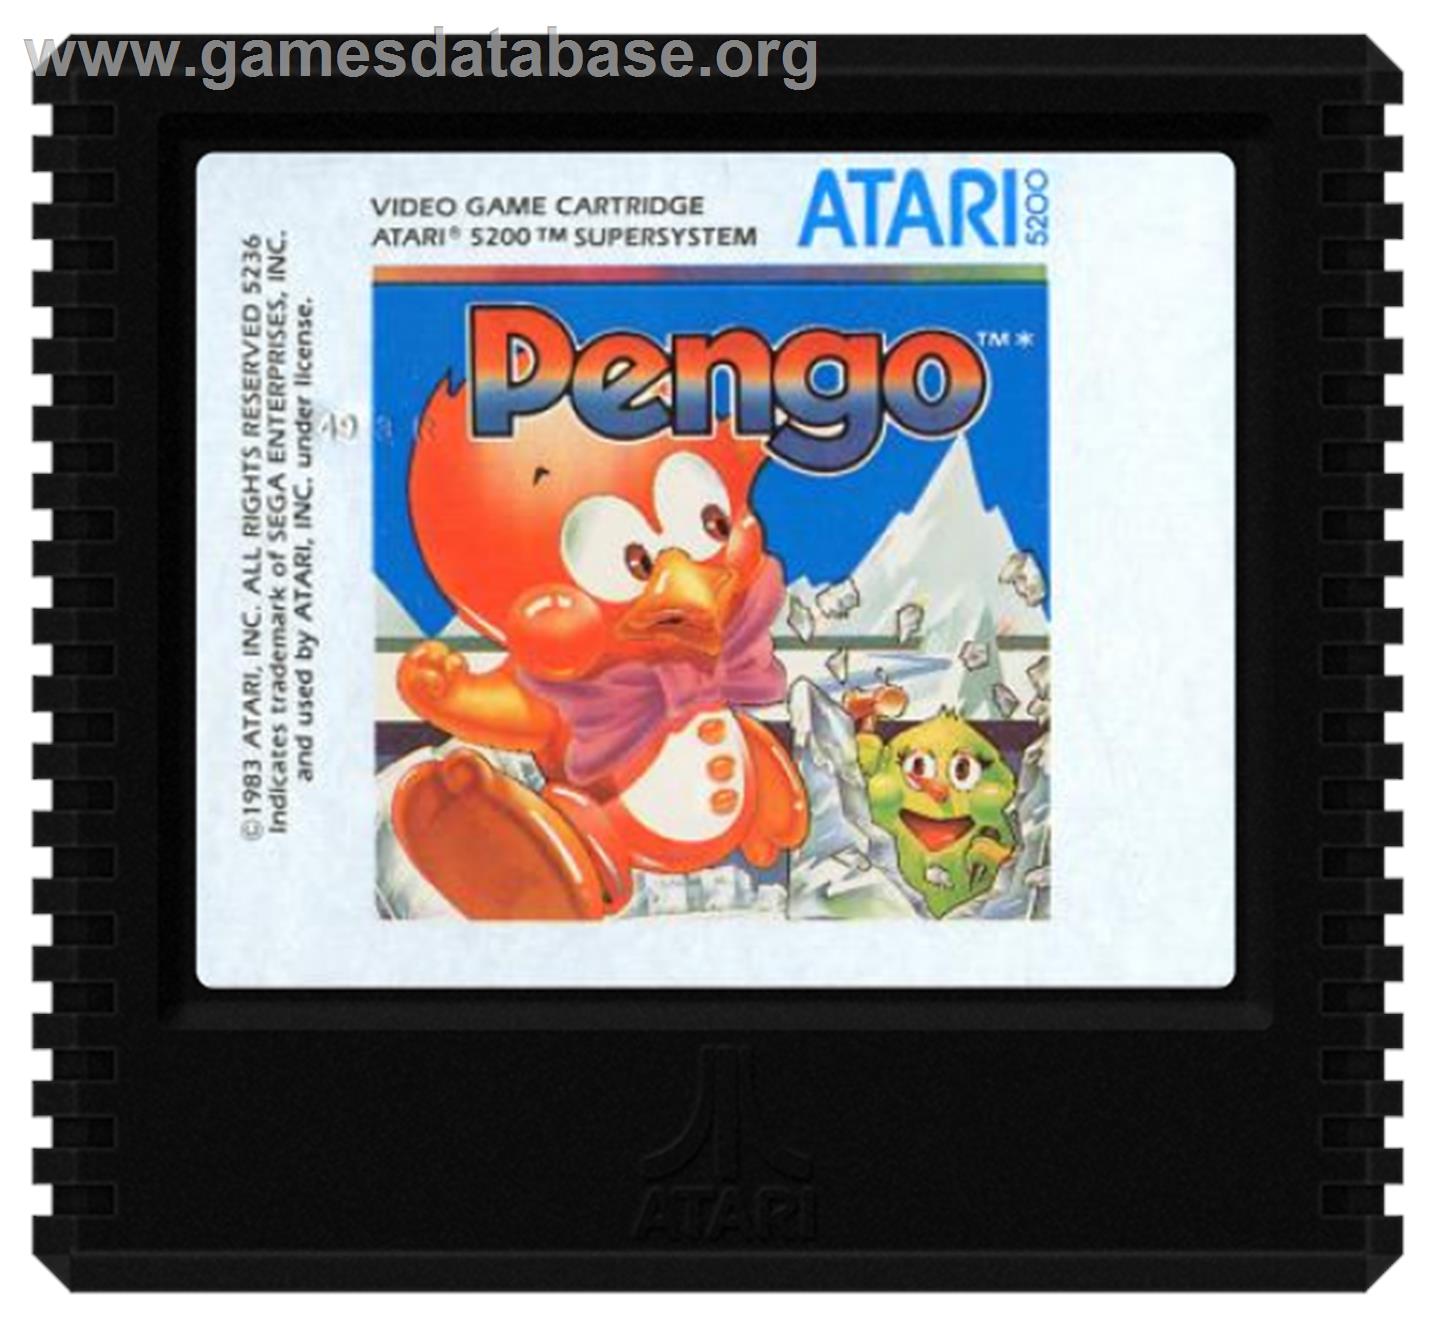 Pengo - Atari 5200 - Artwork - Cartridge